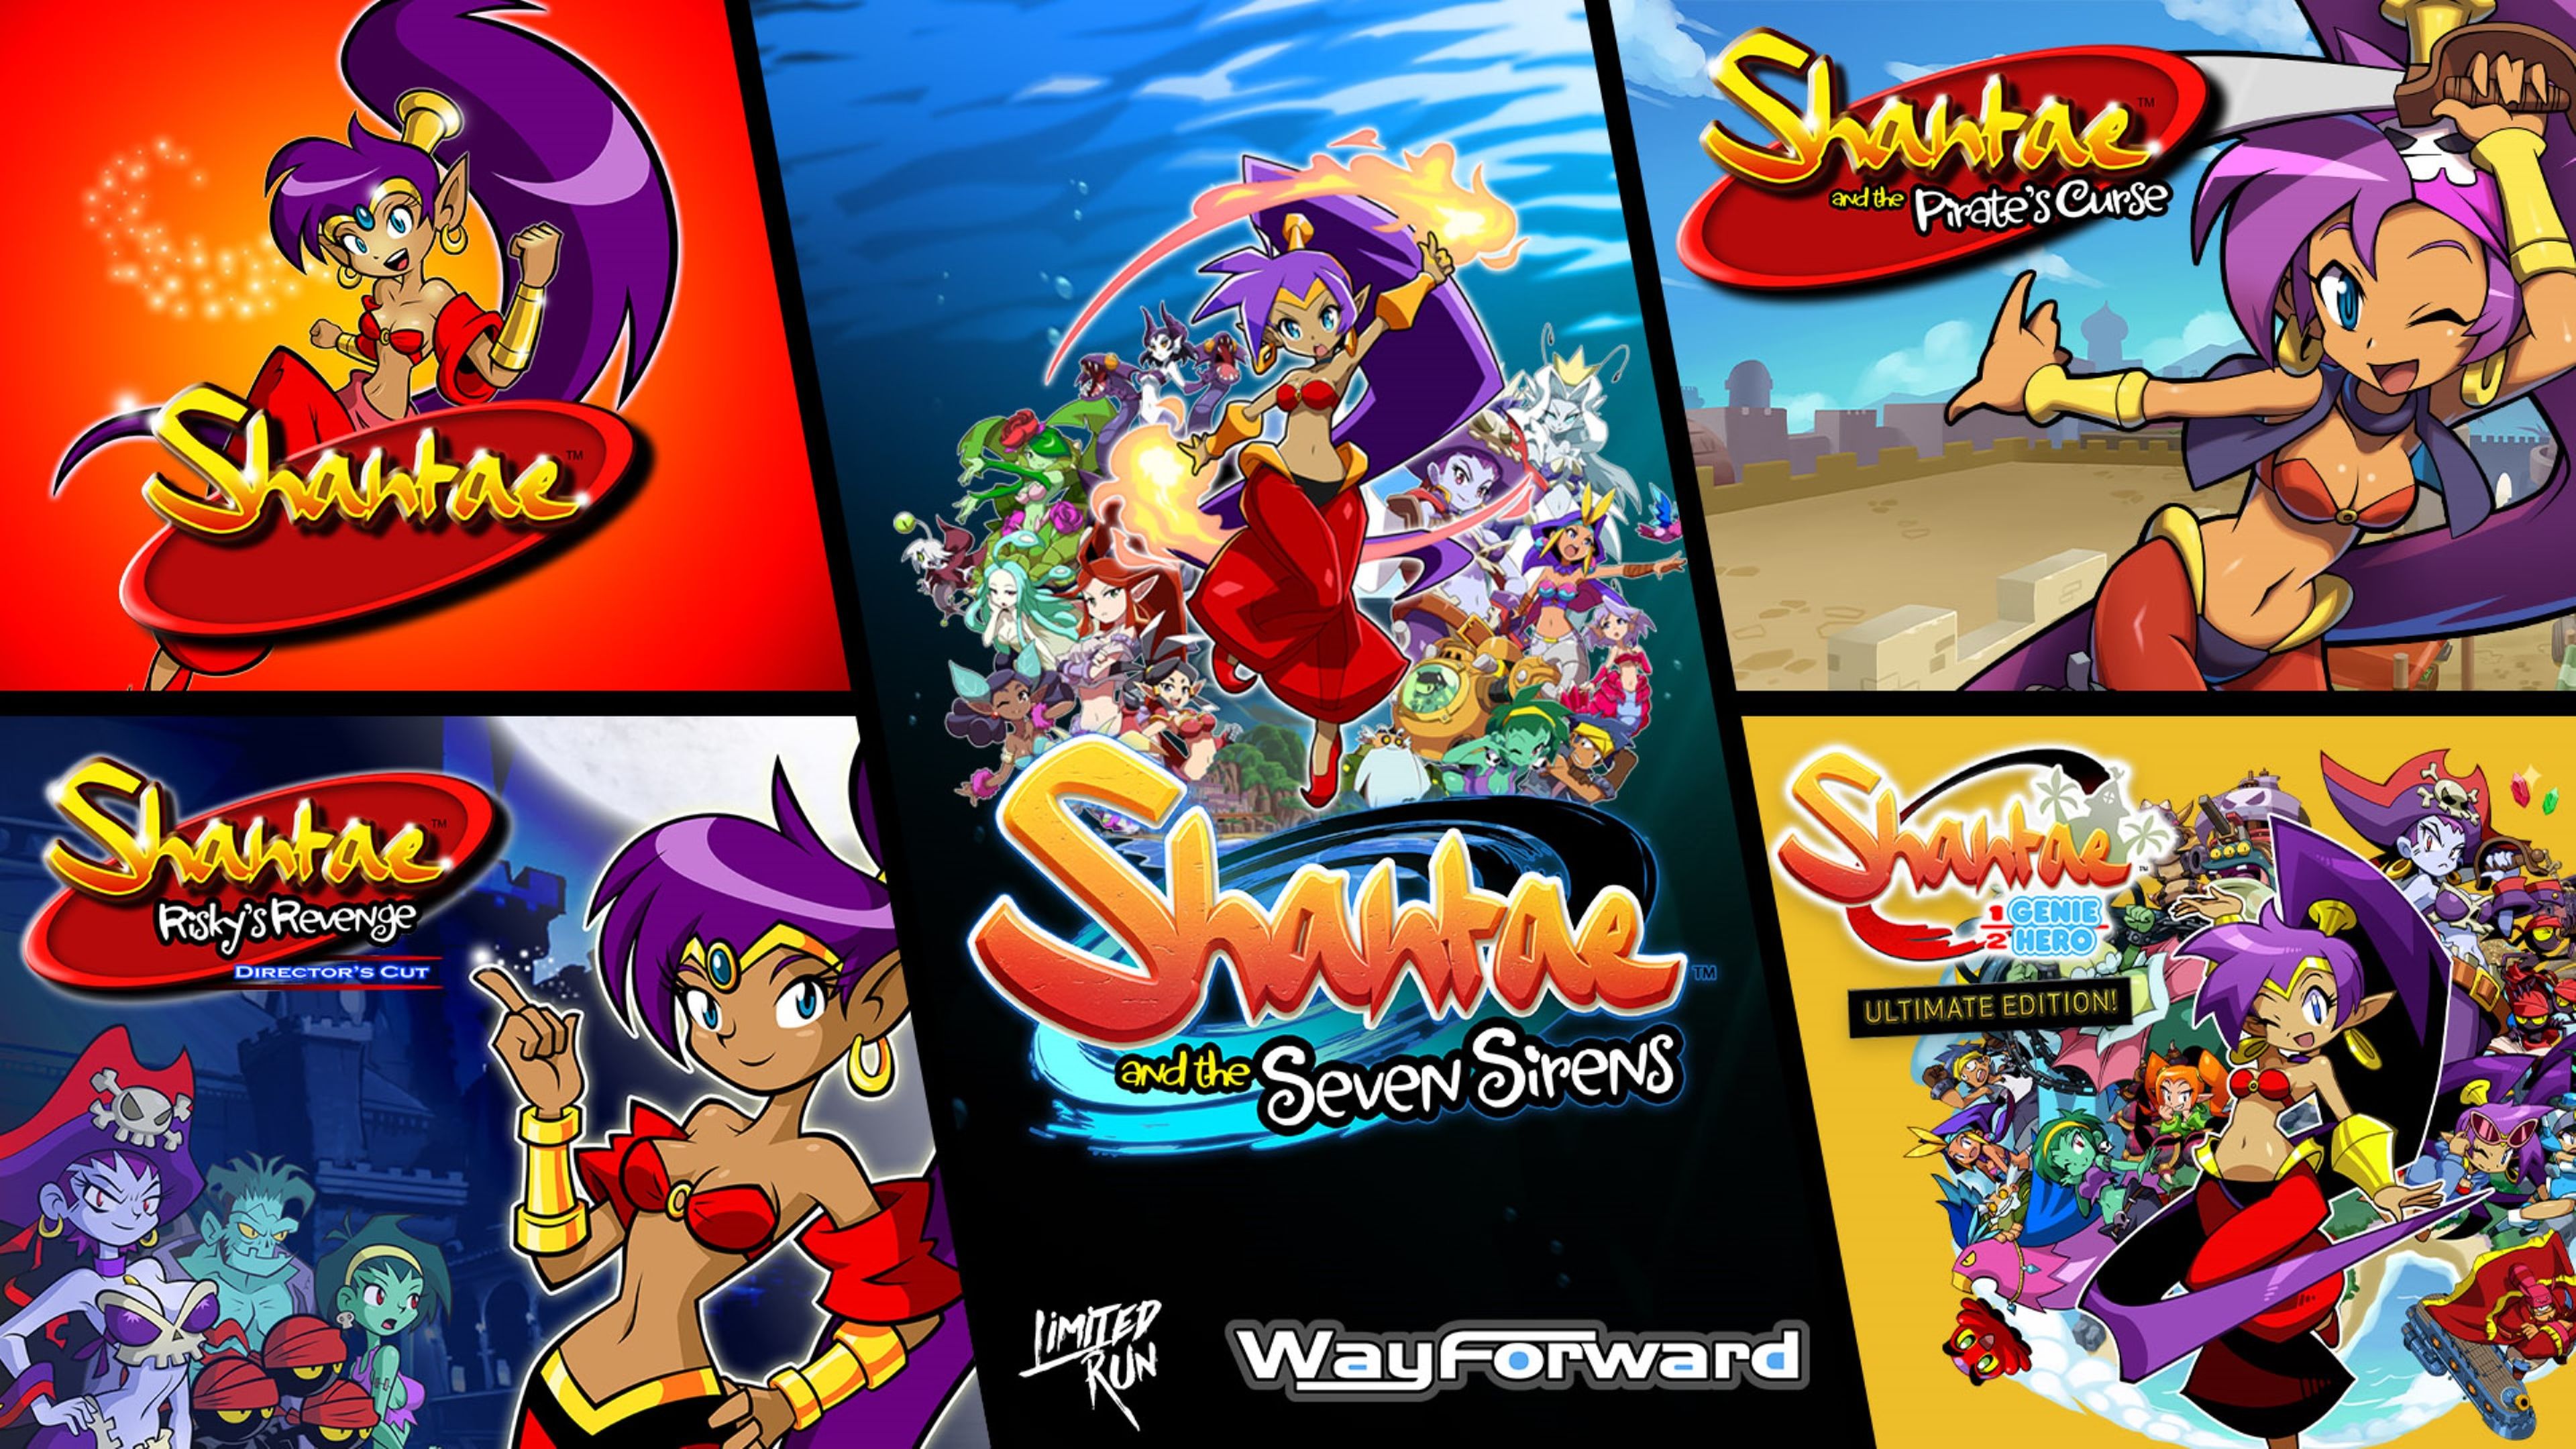 Shantae 1-5